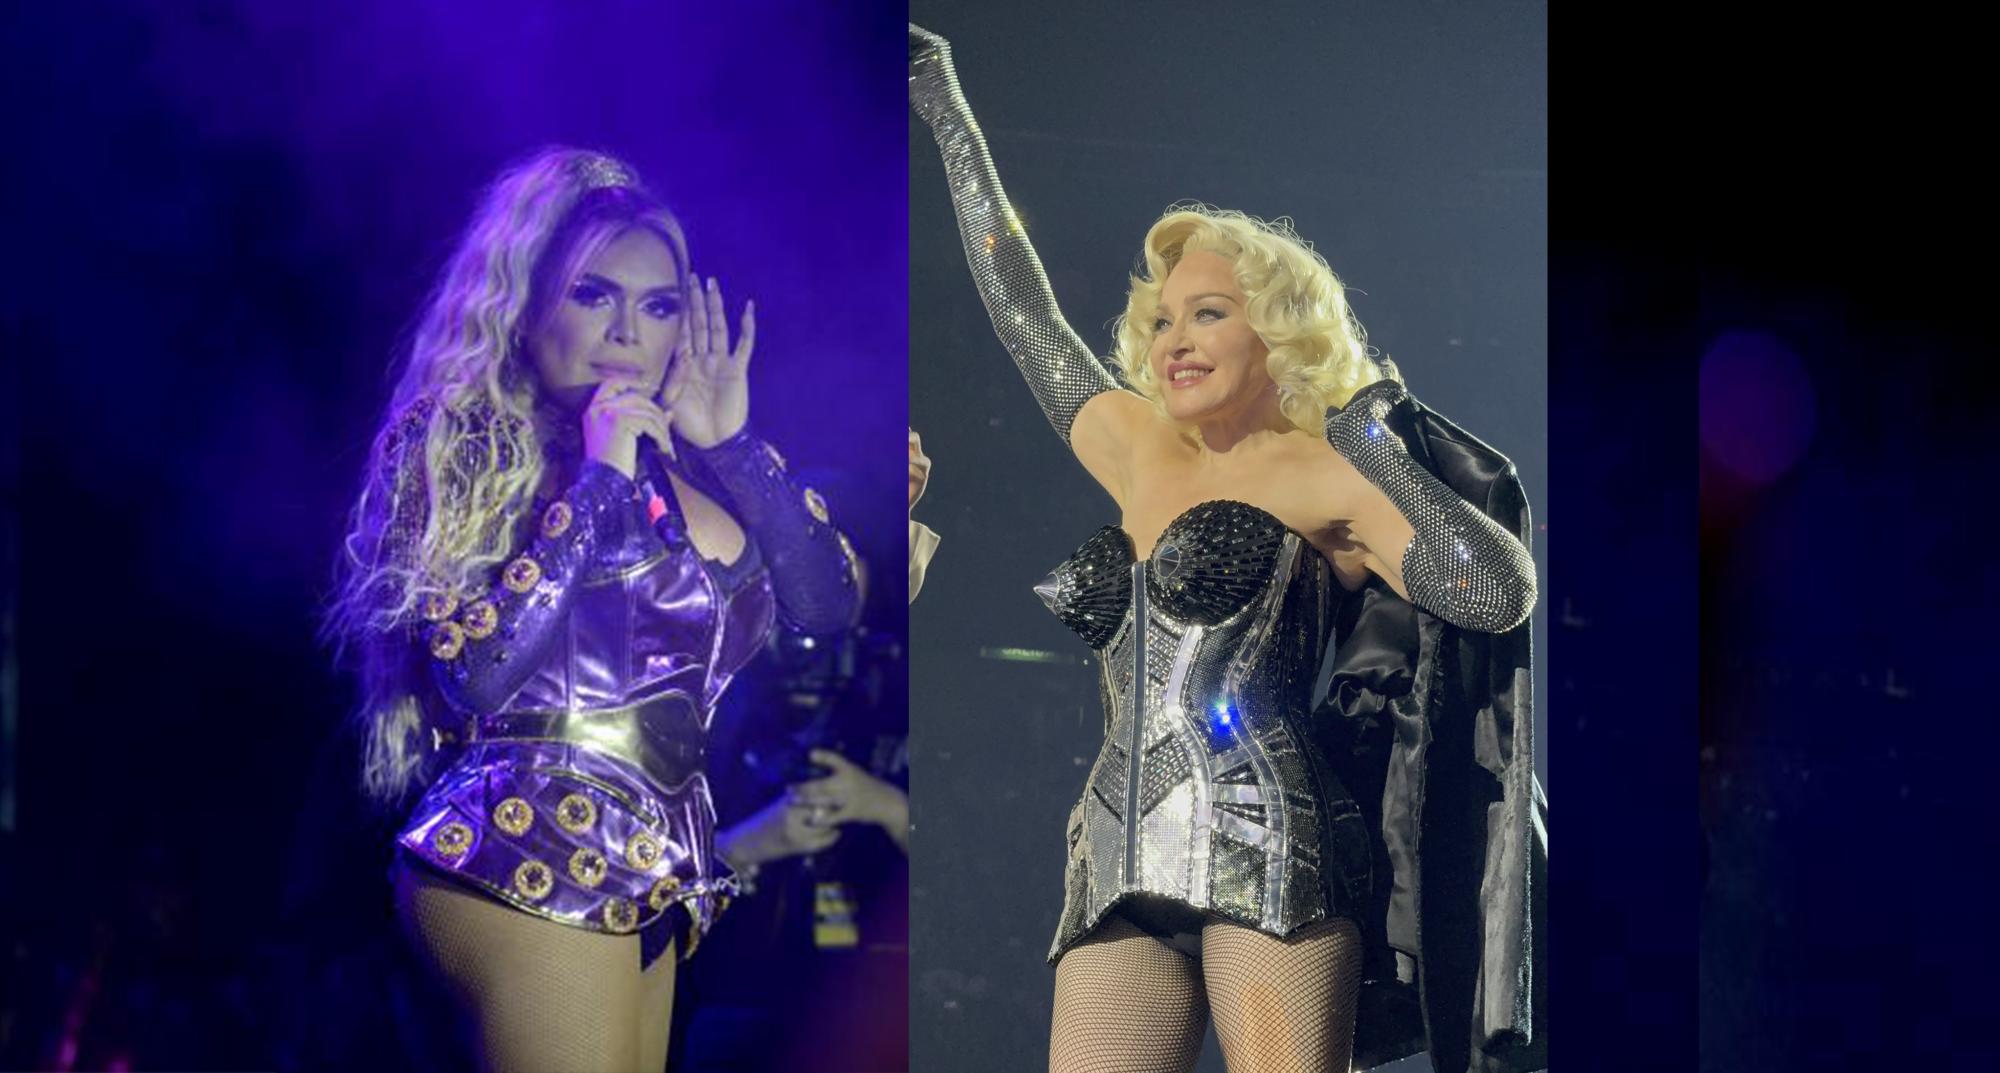 ¡Duelo de rubias! Participará Wendy Guevara como invitada VIP en show de Madonna en CDMX. Noticias en tiempo real